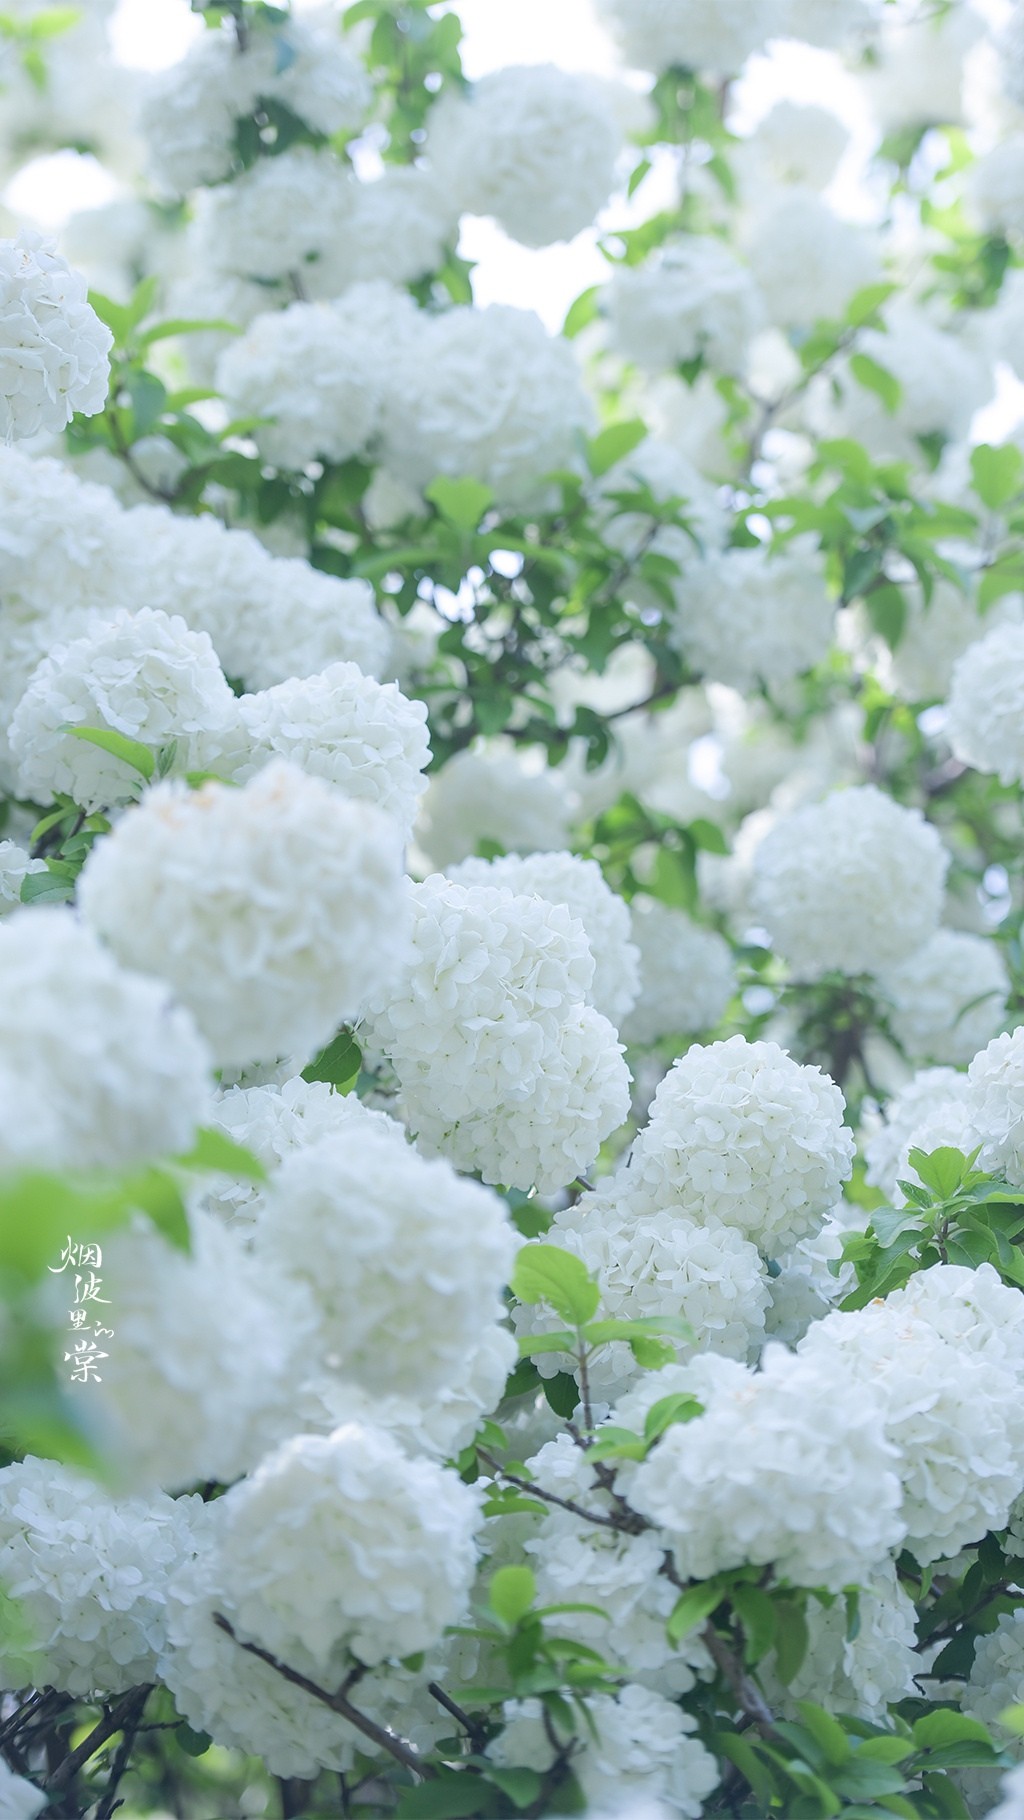 白色木绣球花唯美背景手机壁纸 植物 靓丽图库